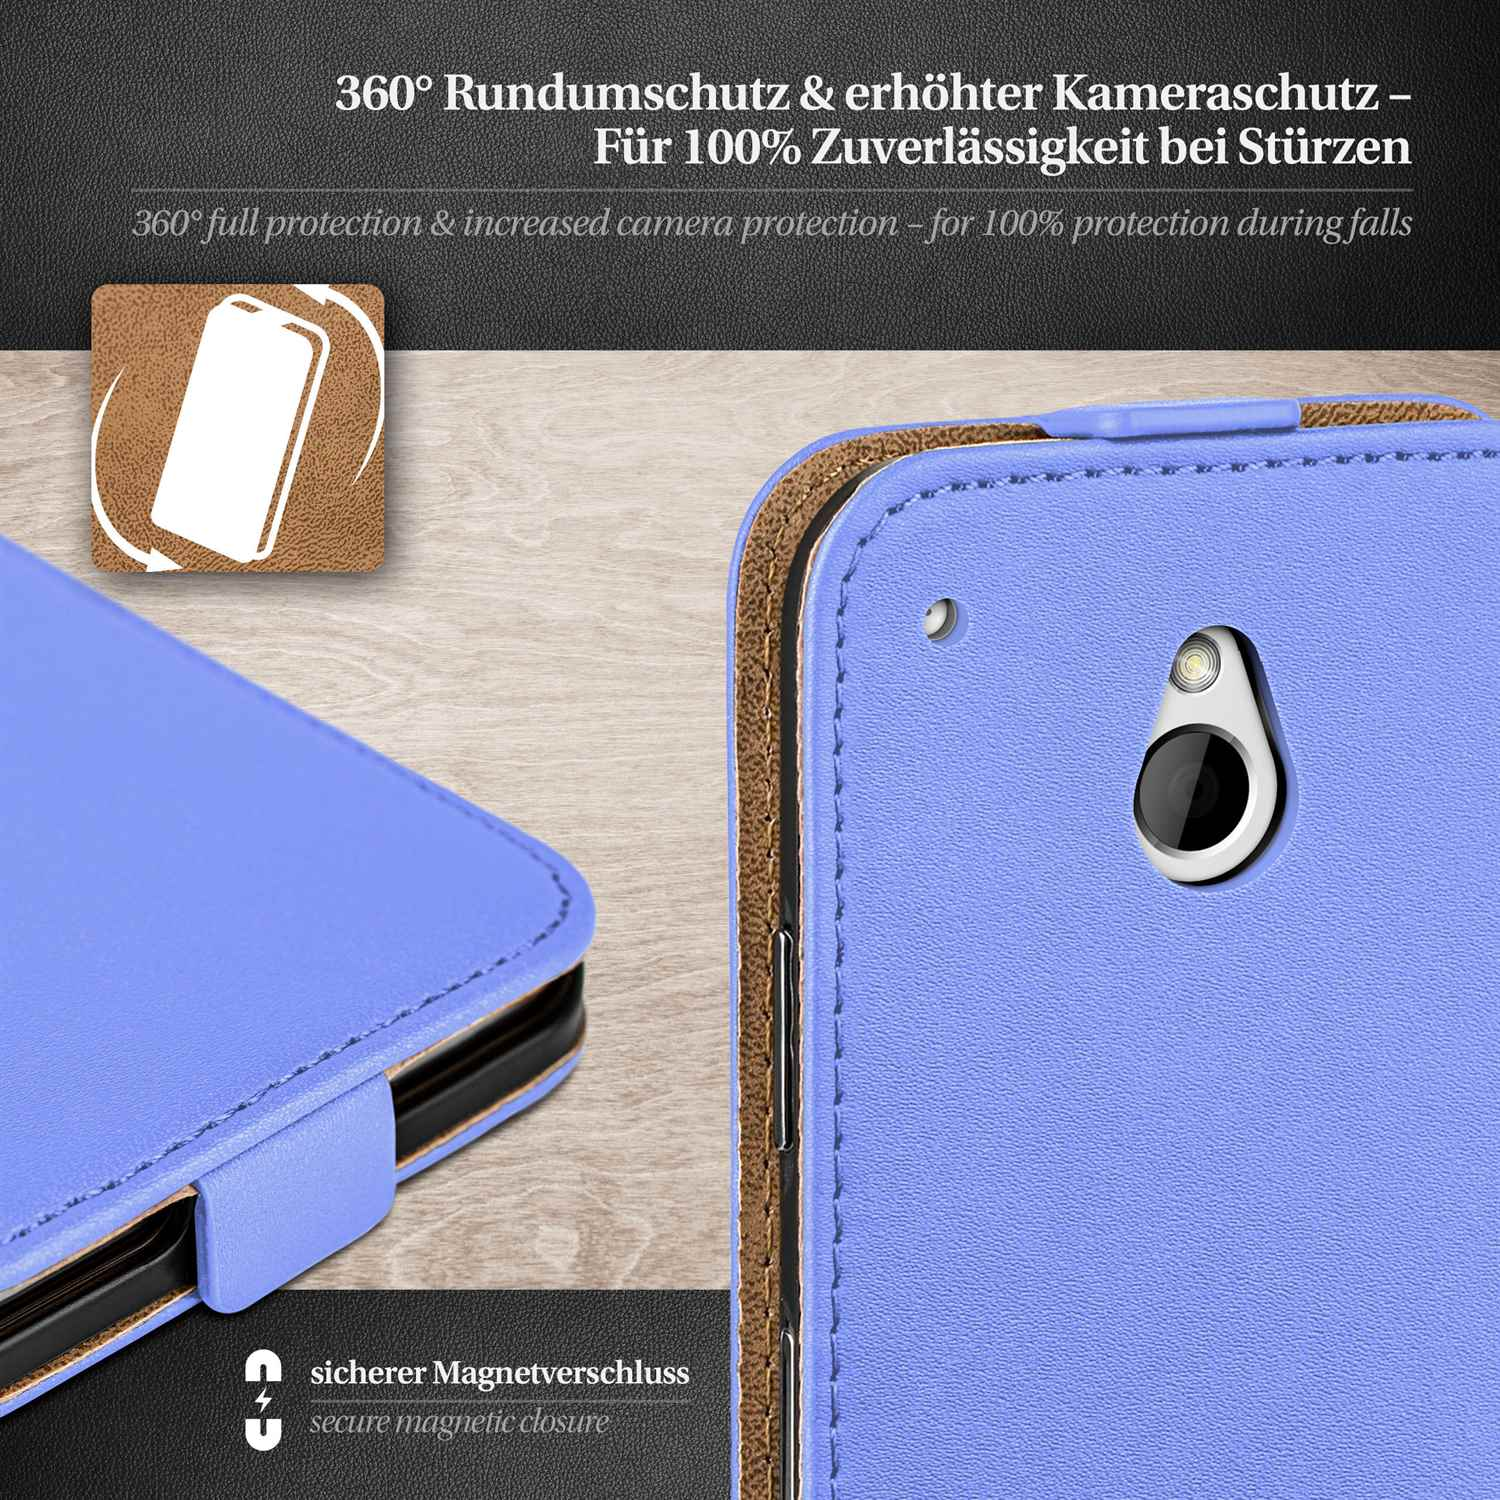 MOEX Flip Case, Flip Sky-Blue HTC, One Mini, Cover